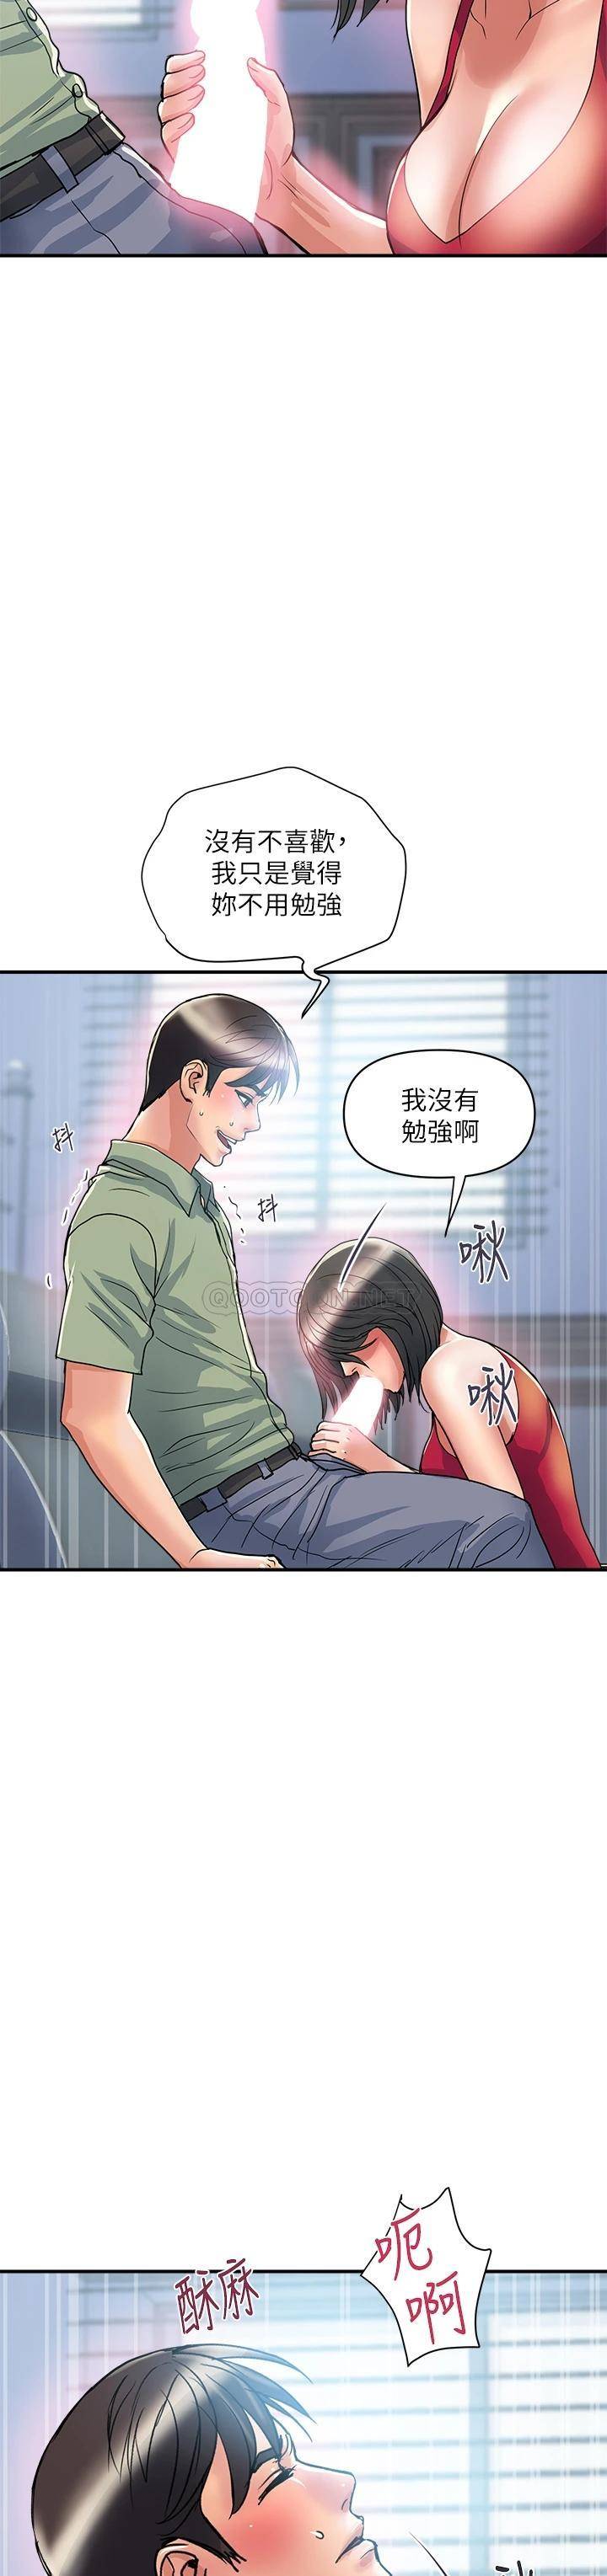 韩国污漫画 行走費洛蒙 第51话以乳交展开的办公室play 3